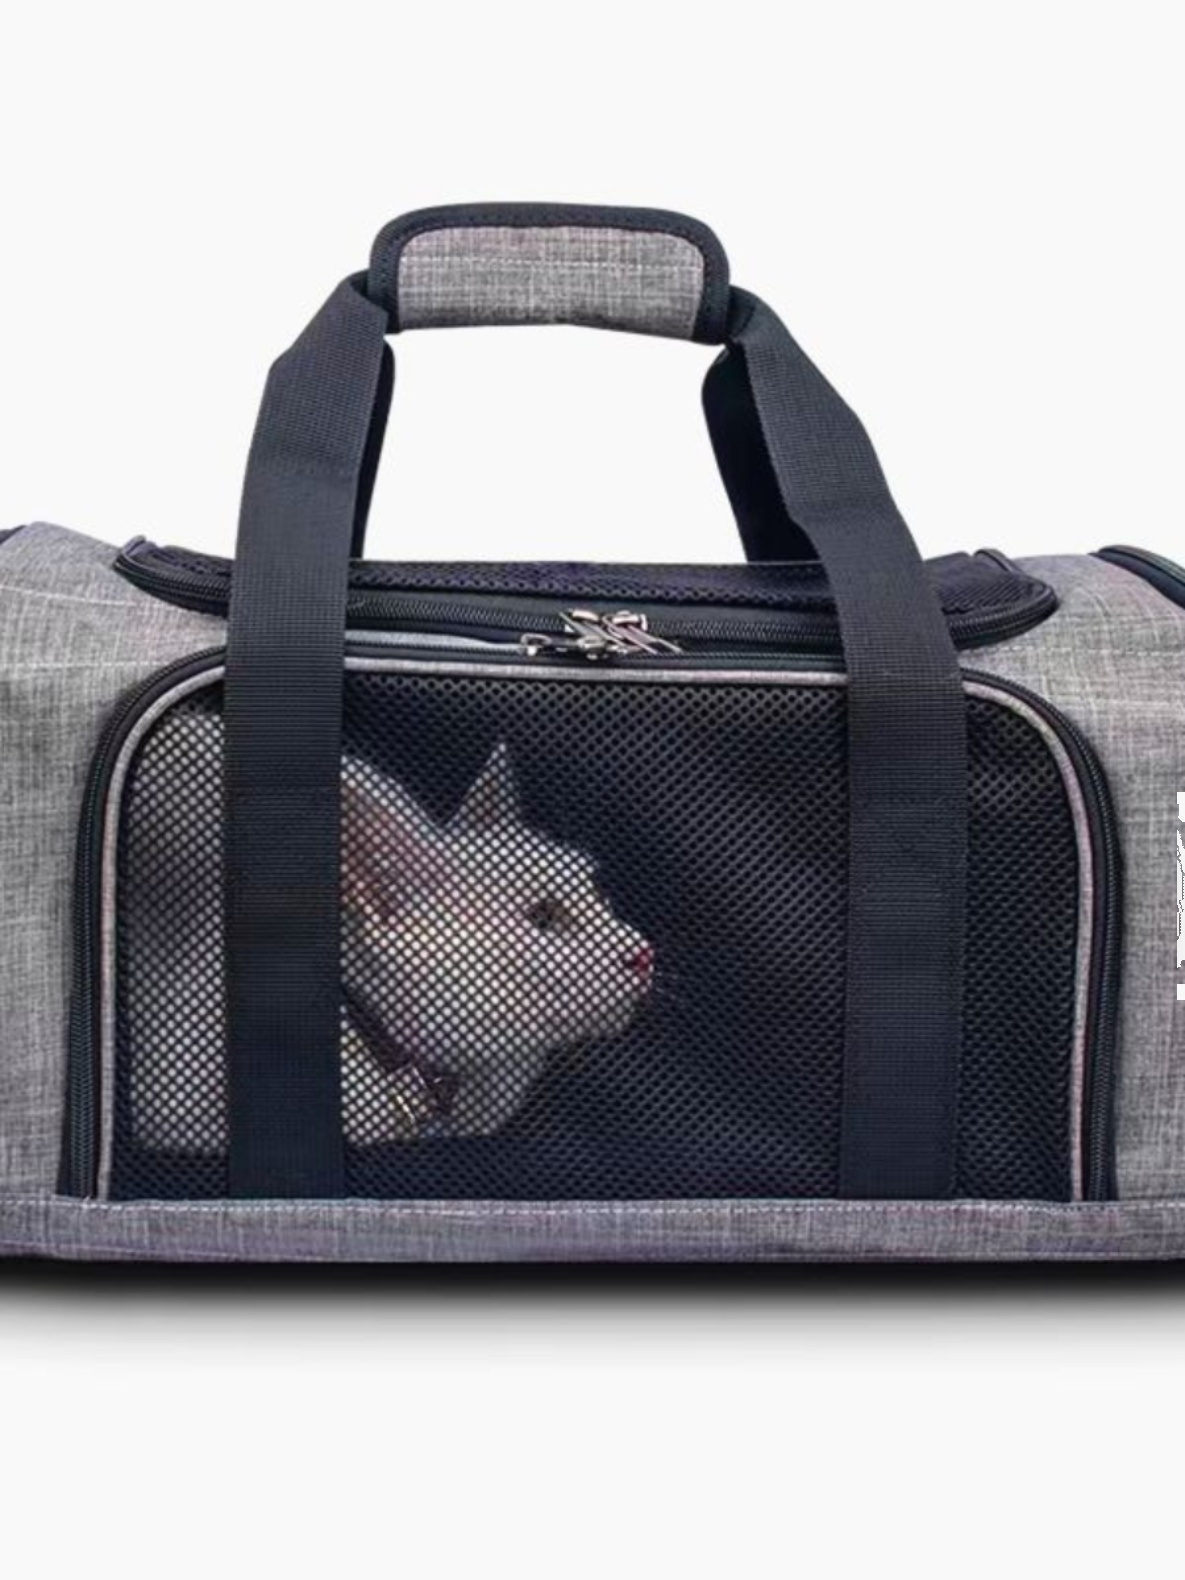 航空貓包寵物包外出便攜手提斜挎貓咪絕育包車載大容量透氣可折曡